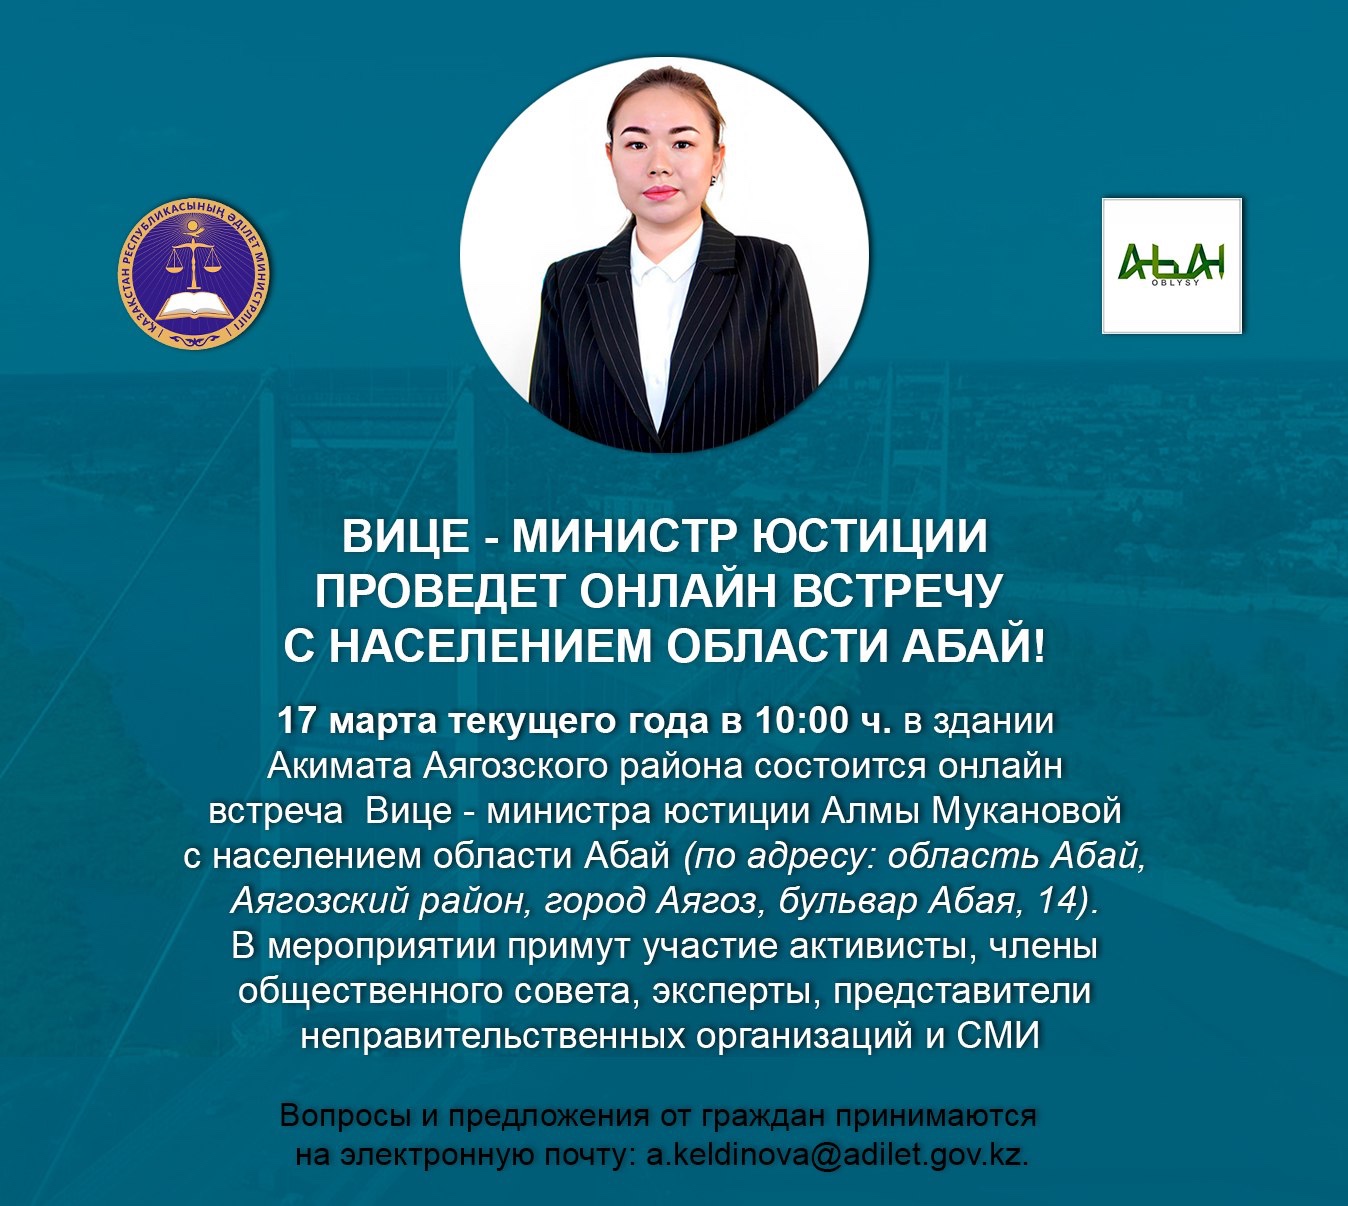 Вице - министр юстиции проведет онлайн встречу с населением области Абай!